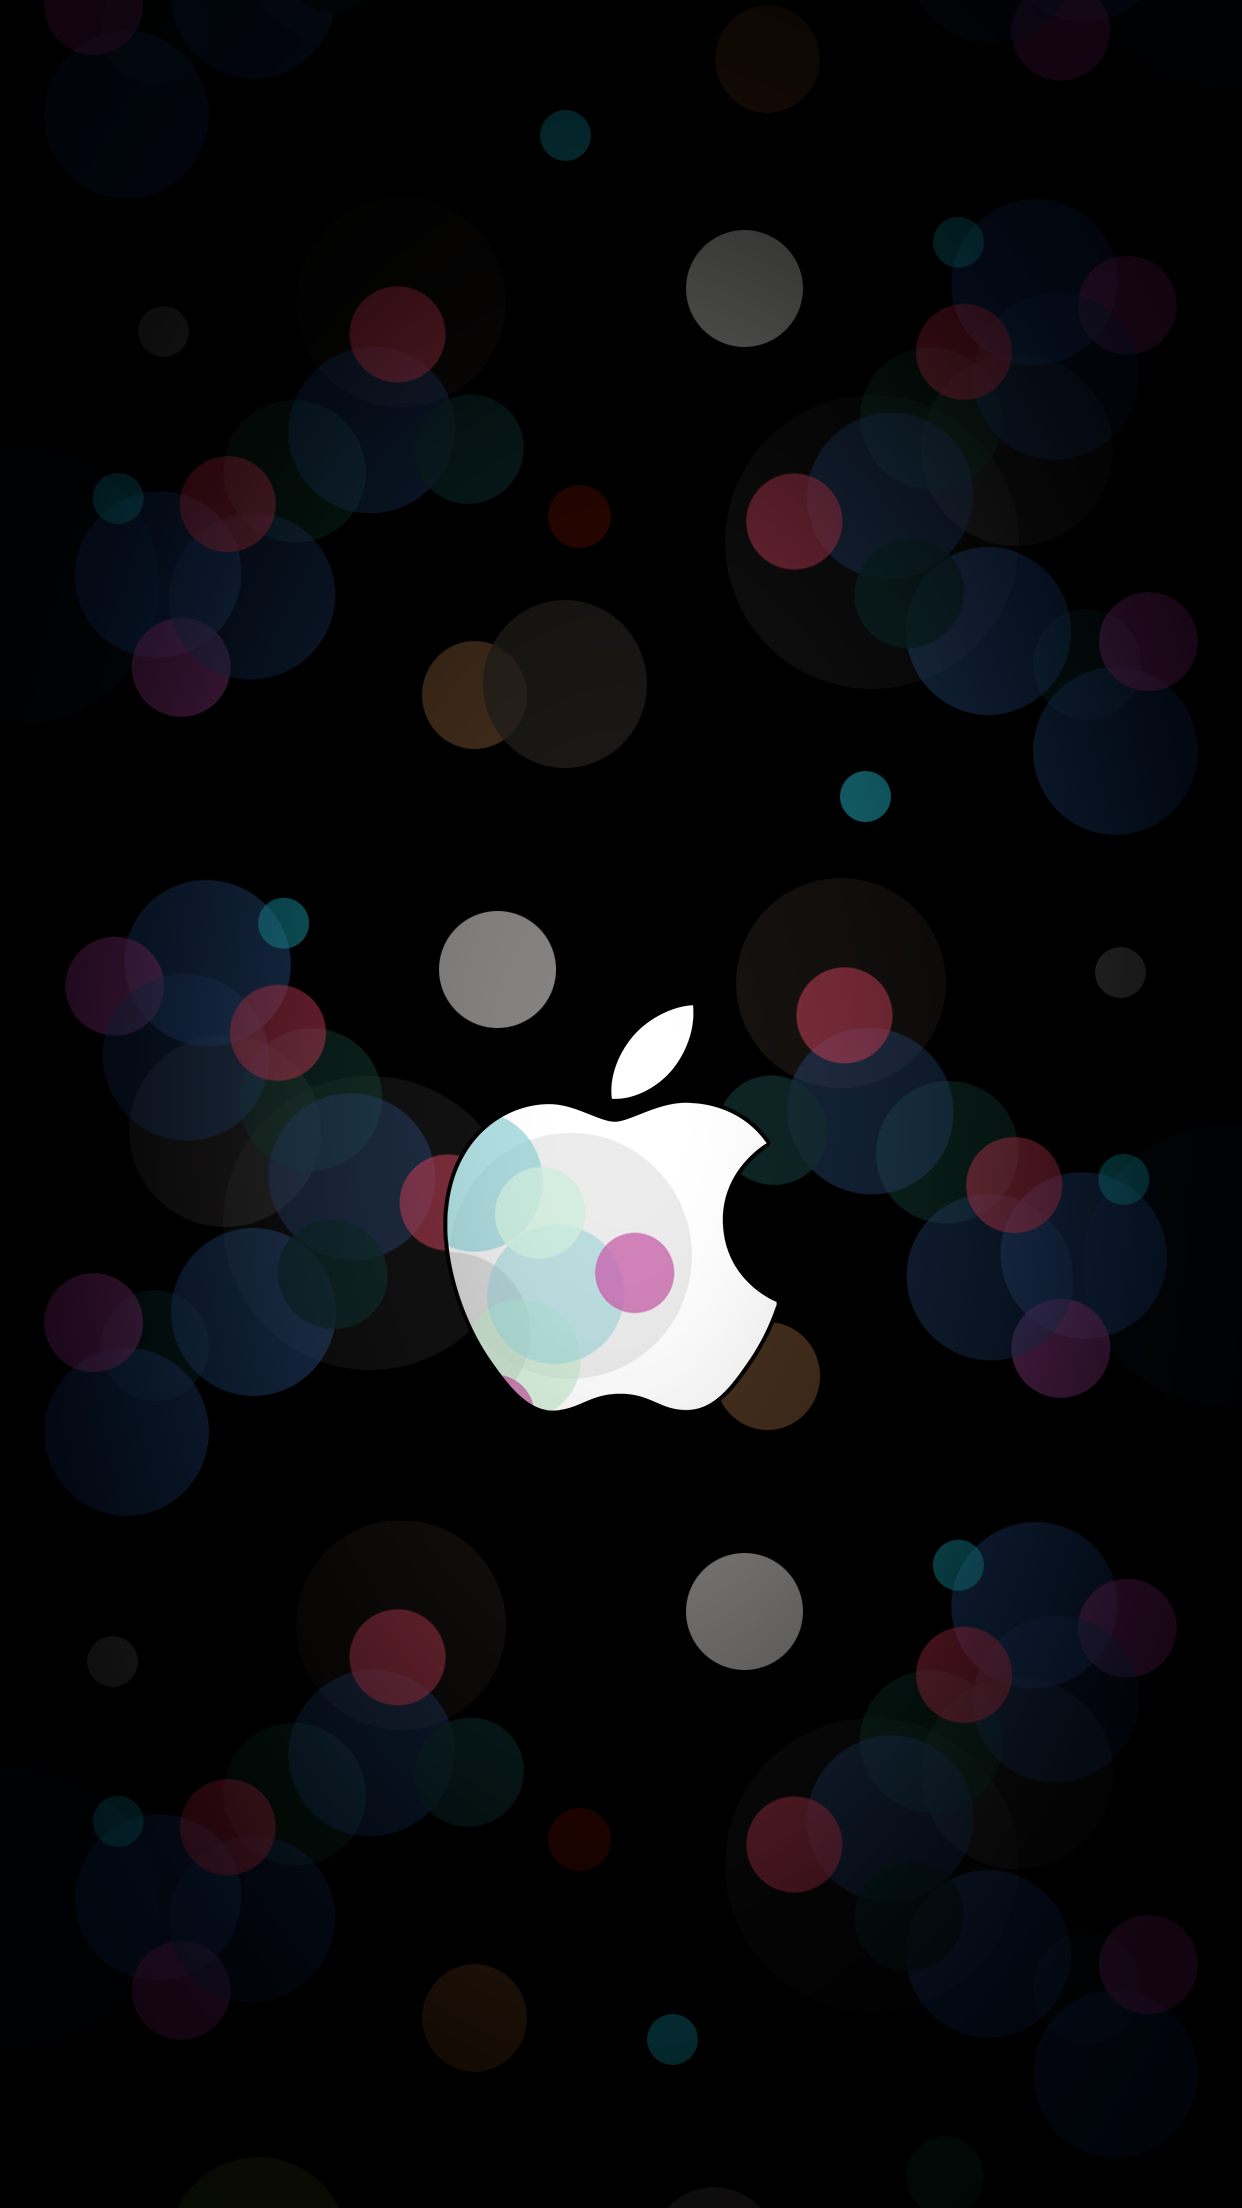 [Bild: apple-september-7-event-wallpaper-ar7-inspired-logo.png]